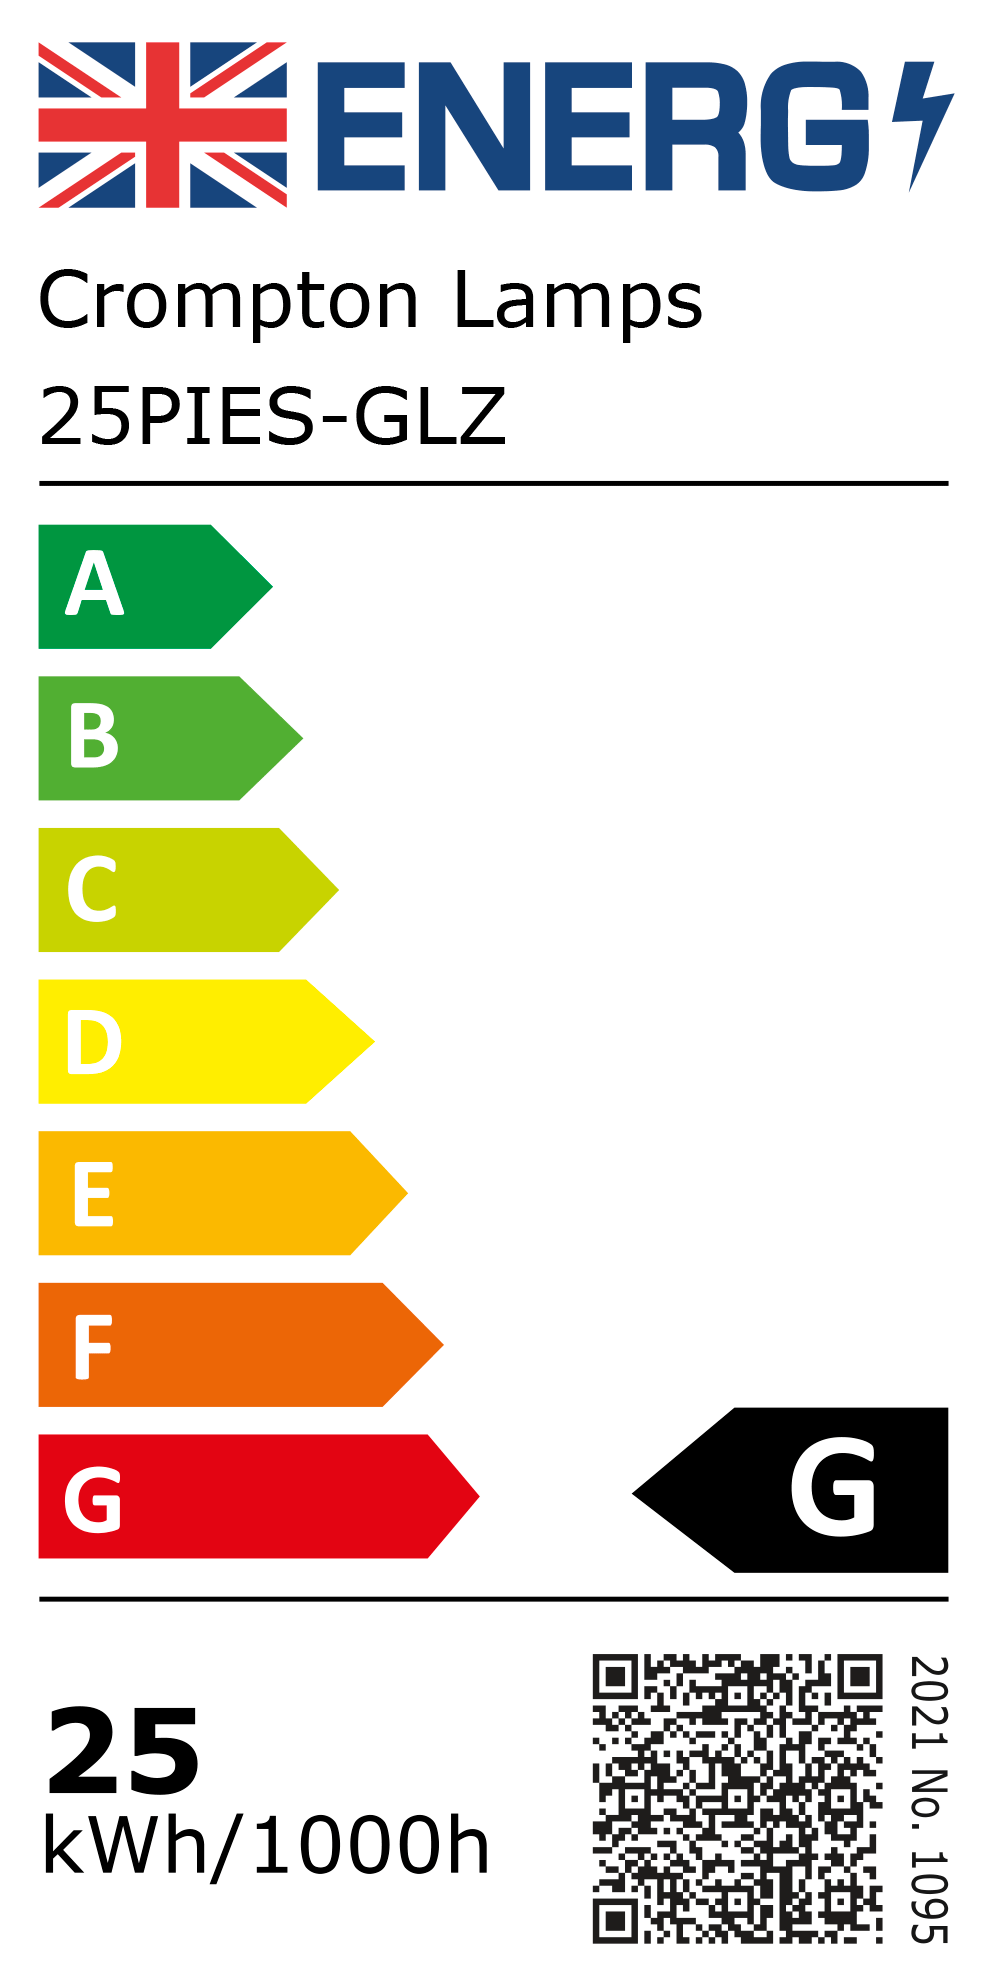 New 2021 Energy Rating Label: Stock Code 25PIES-GLZ